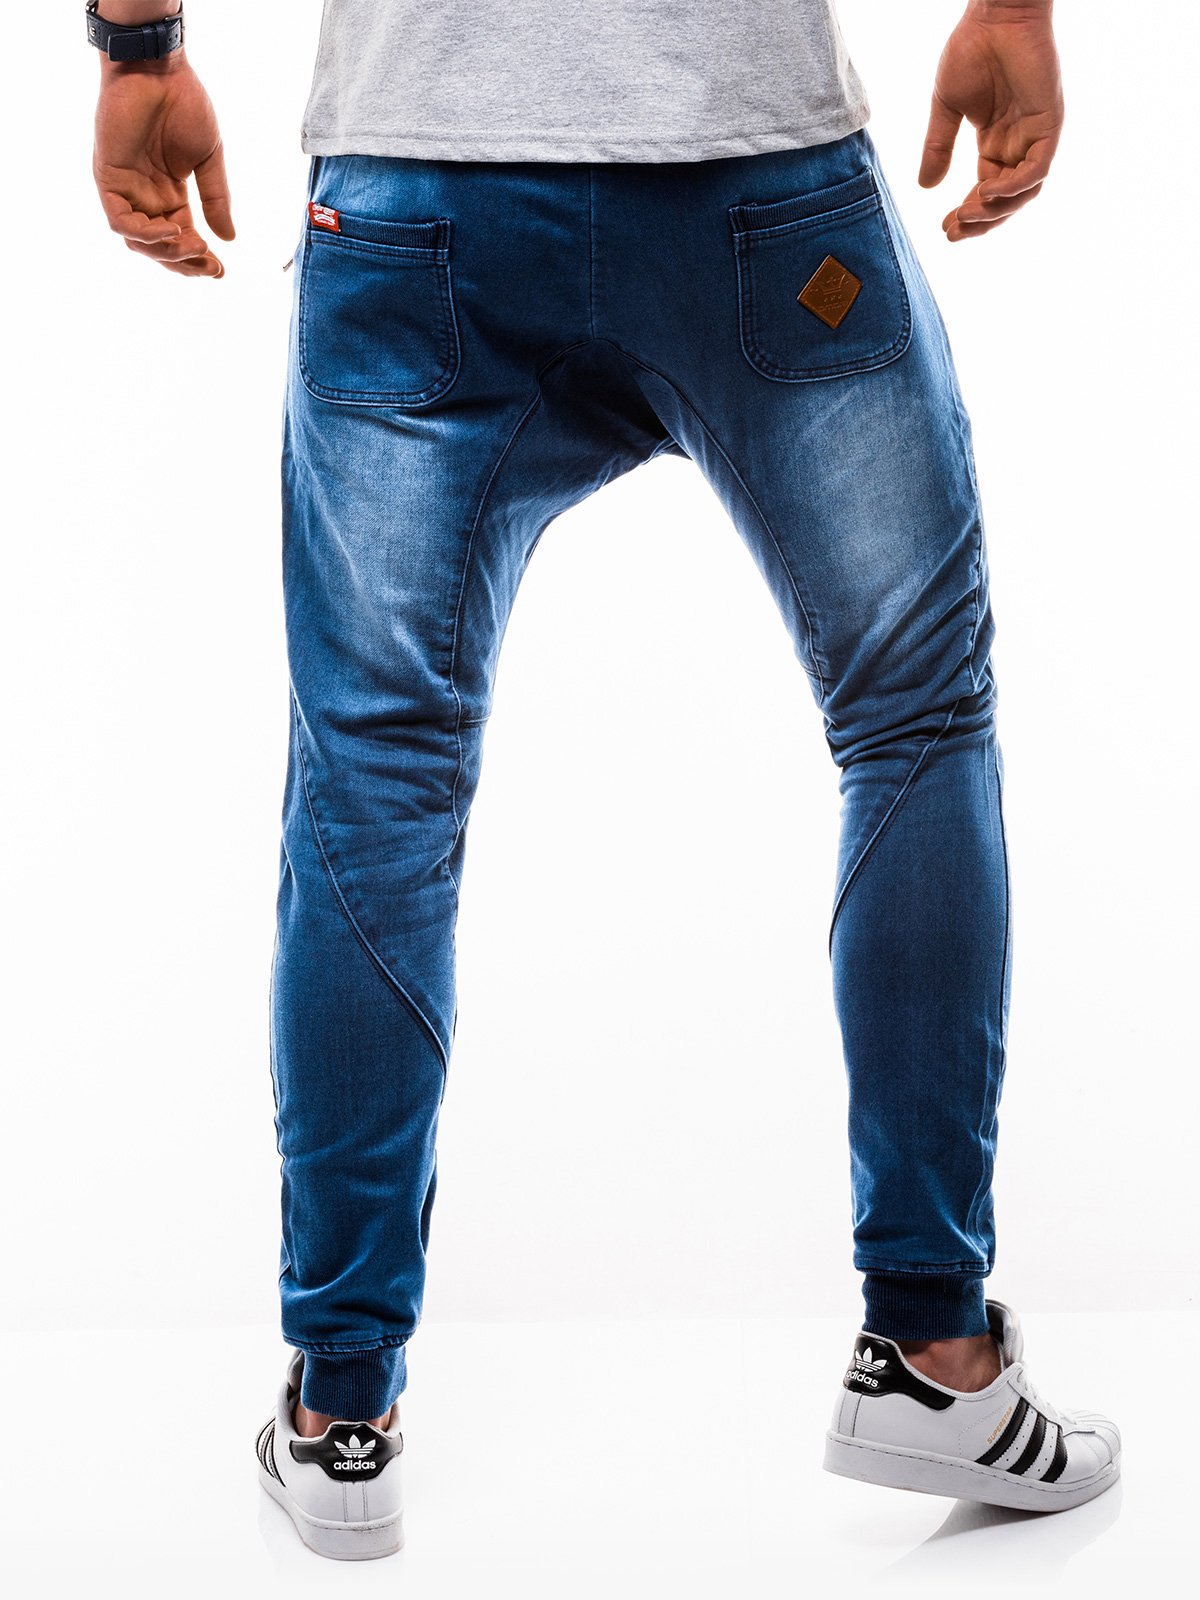 Men's jeans joggers P198 - blue | MODONE wholesale - Clothing For Men